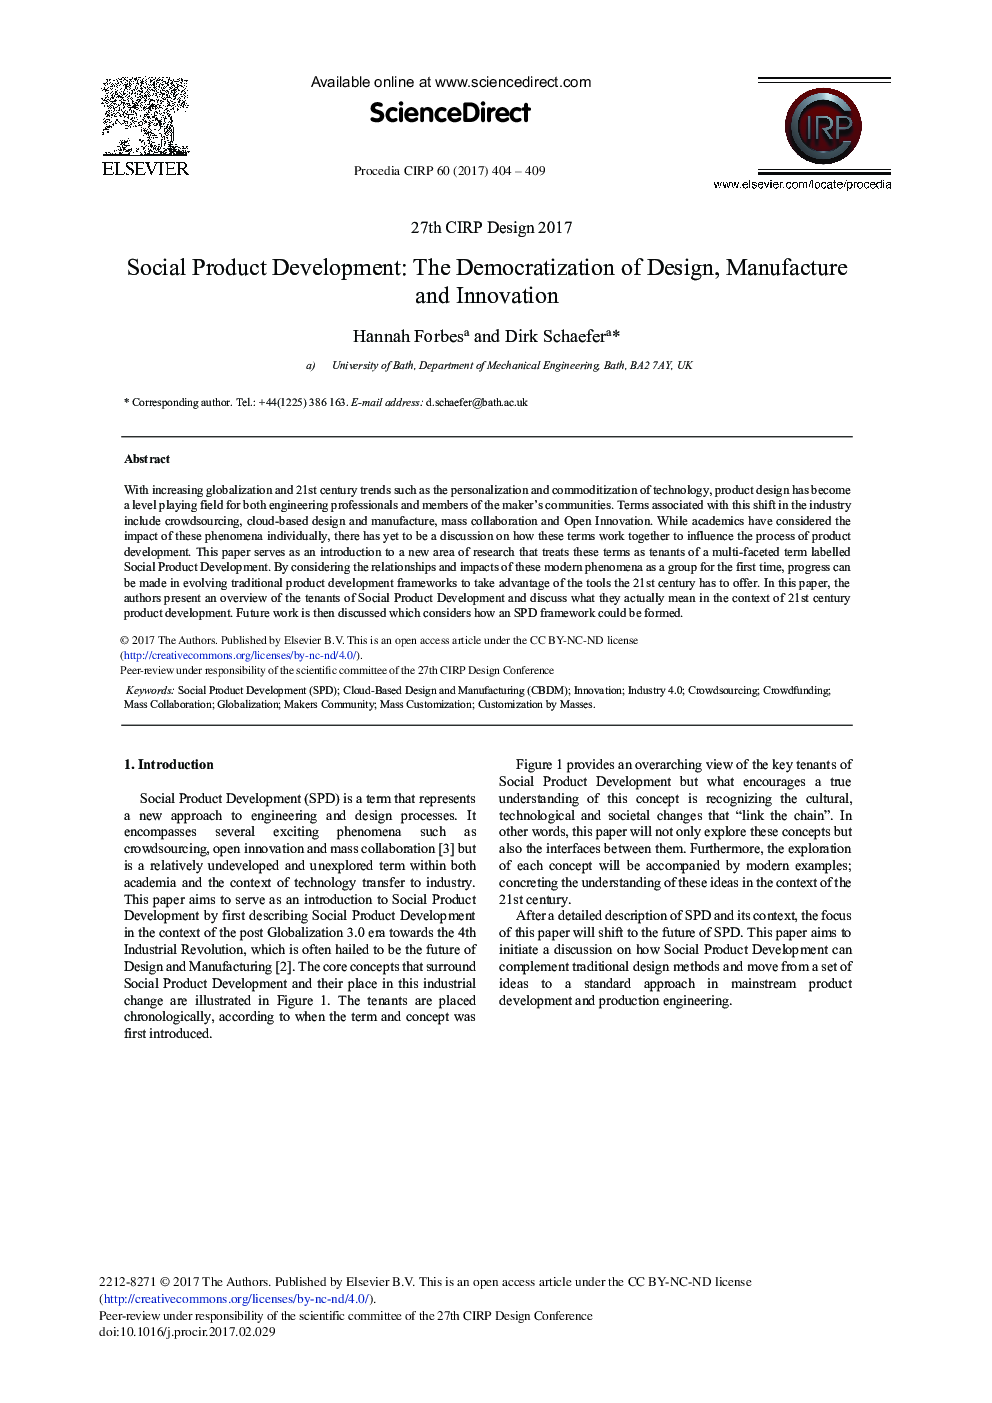 توسعه محصولات اجتماعی: دموکراتیزه کردن طراحی، ساخت و نوآوری 